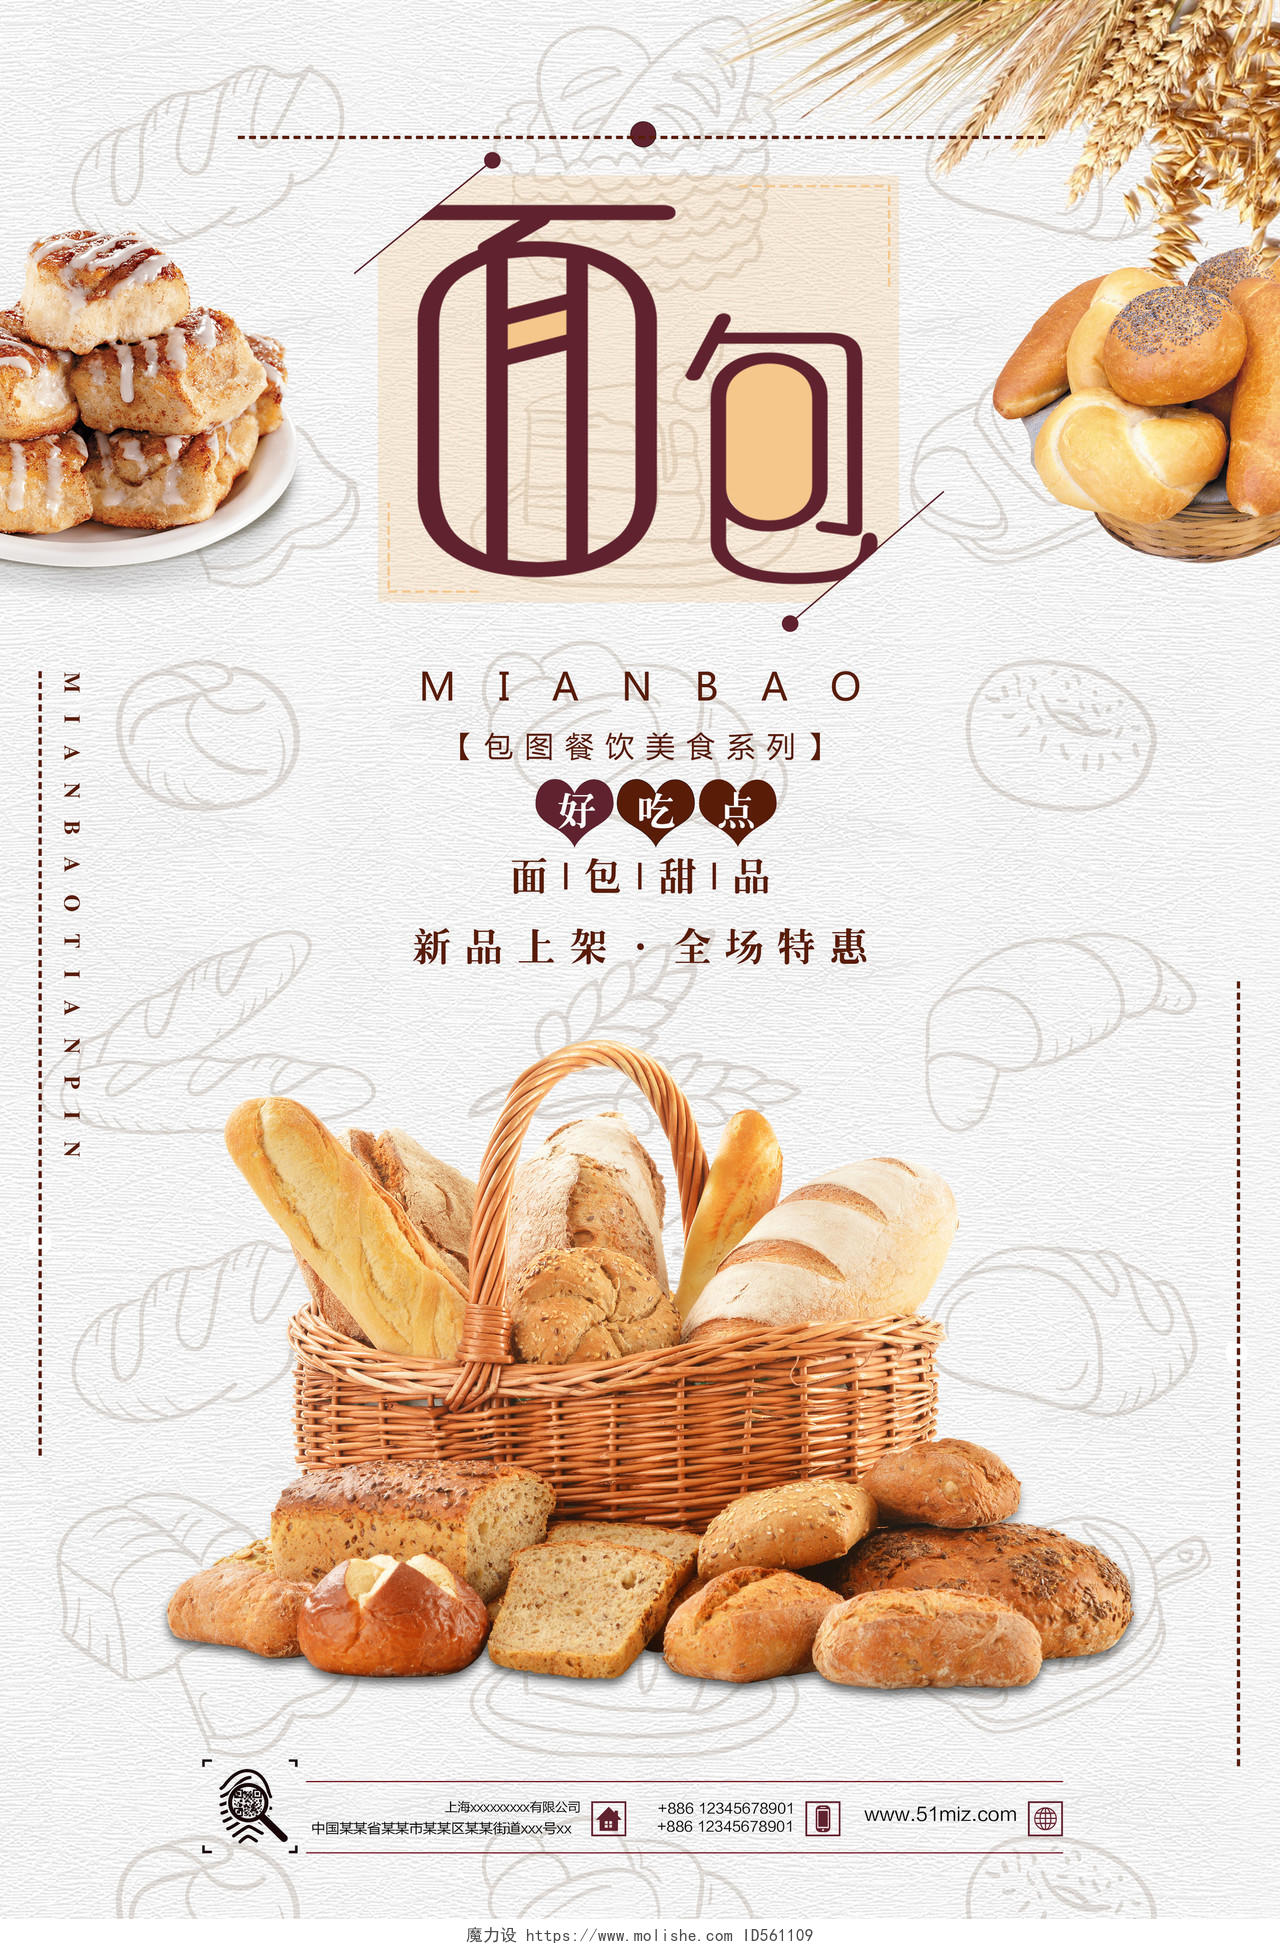 淡雅时尚面包甜品烘焙蛋糕店面包甜品全程特惠促销海报